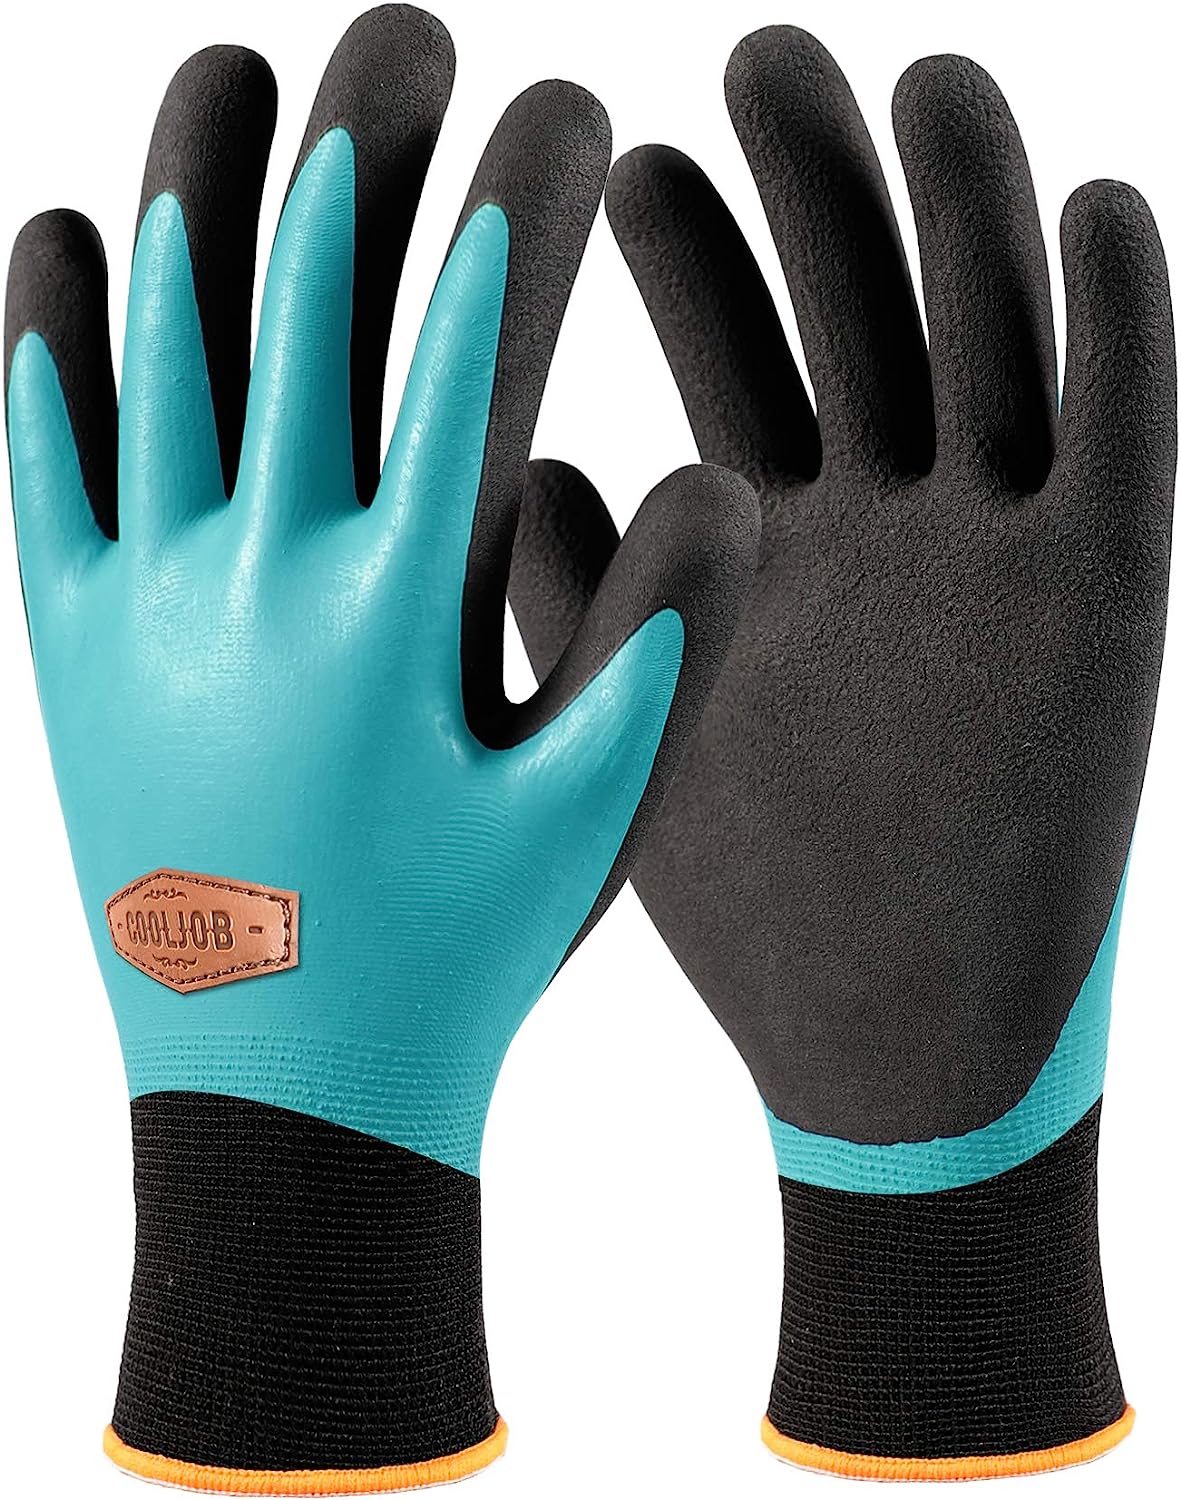 COOLJOB Waterproof Winter Freezer Gloves for Working [...]